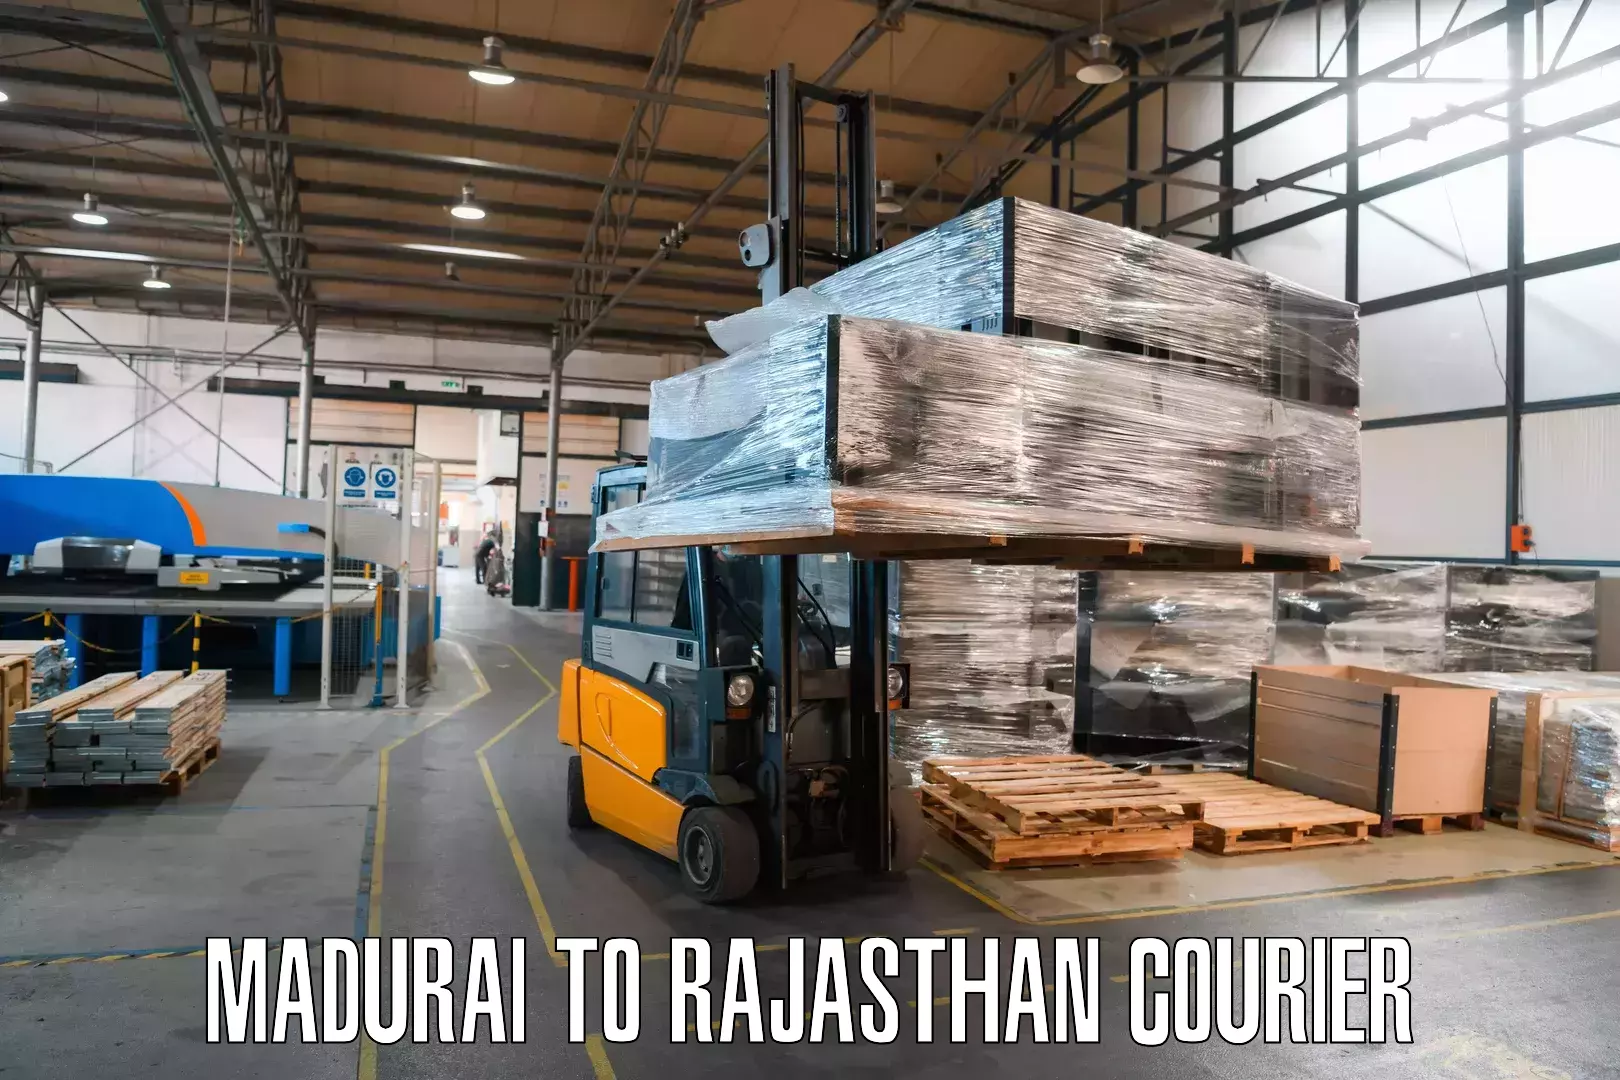 Express logistics providers Madurai to Pokhran